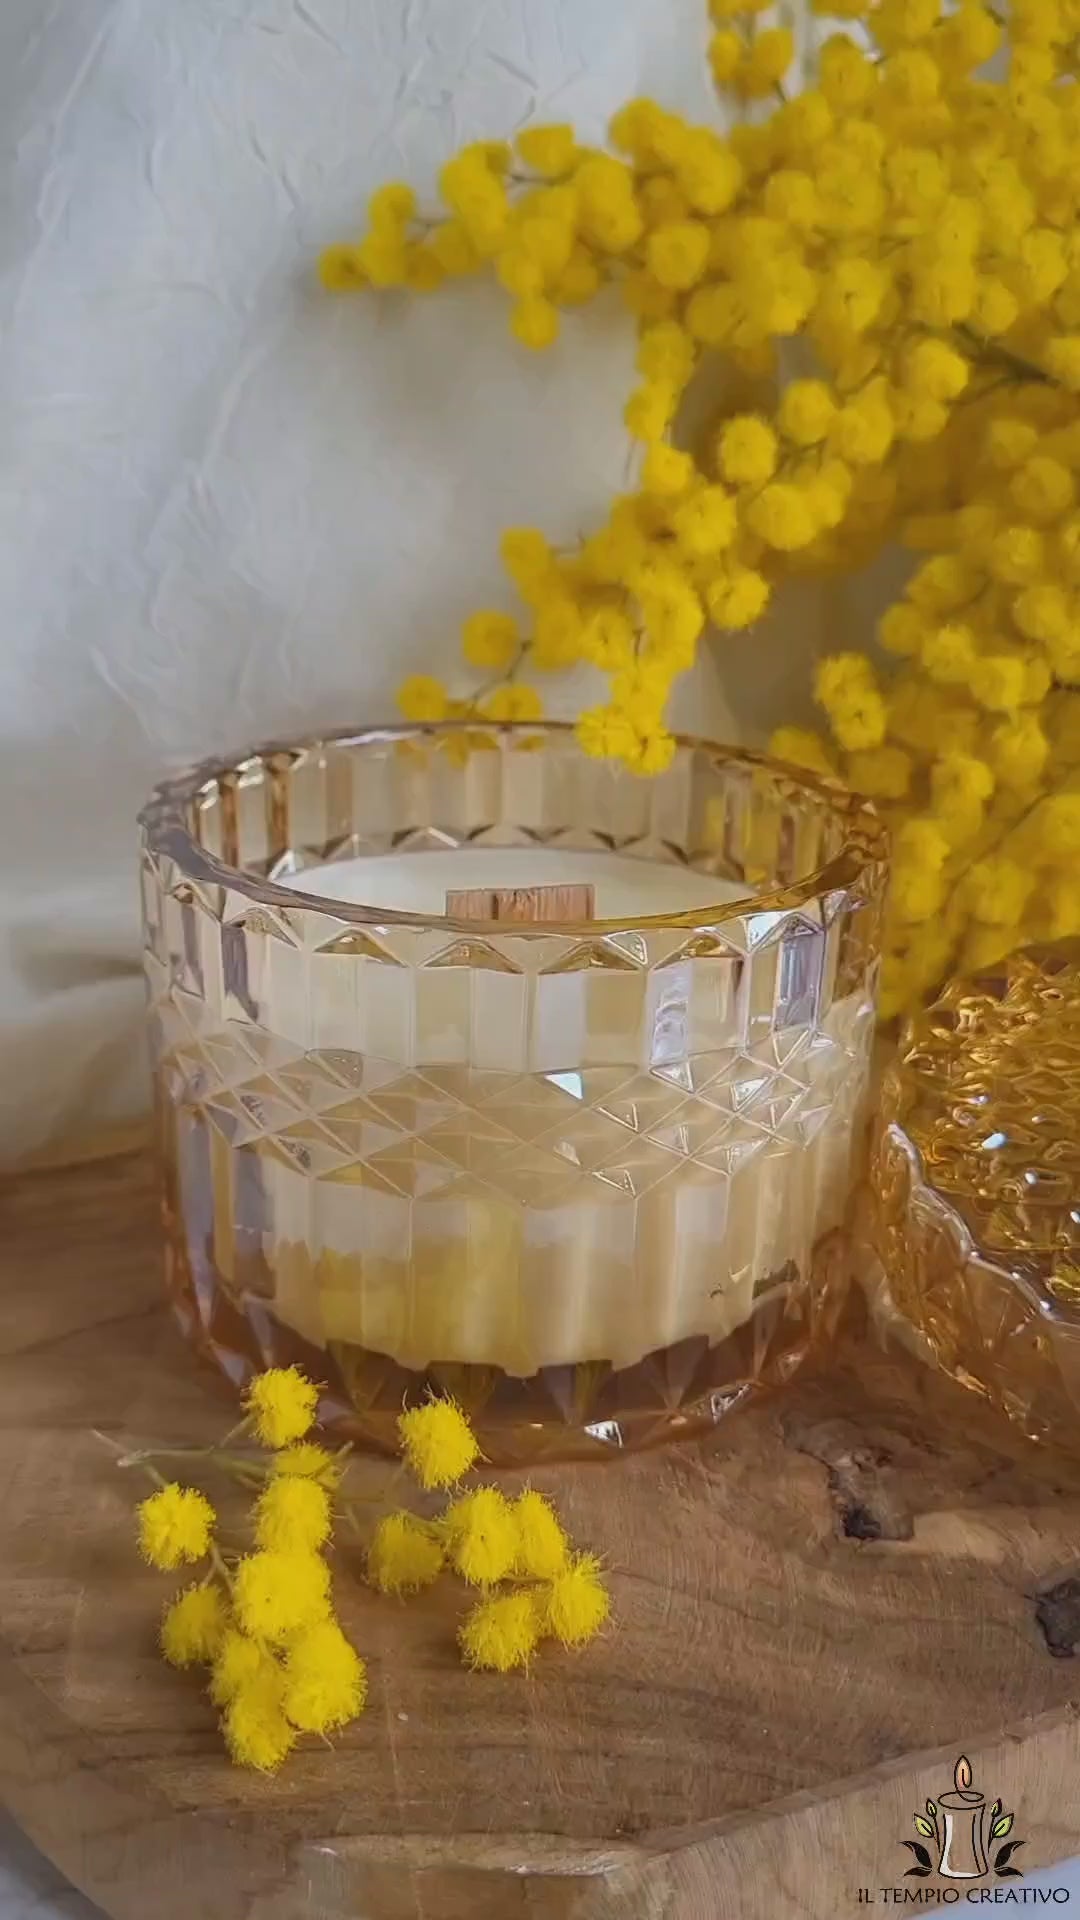 Video della candela in cera di soia con stoppino in legno al profumo di mimosa, realizzata in portagioie di vetro lavorato con coperchio decorato, per celebrare l'8 marzo la Festa della Donna.